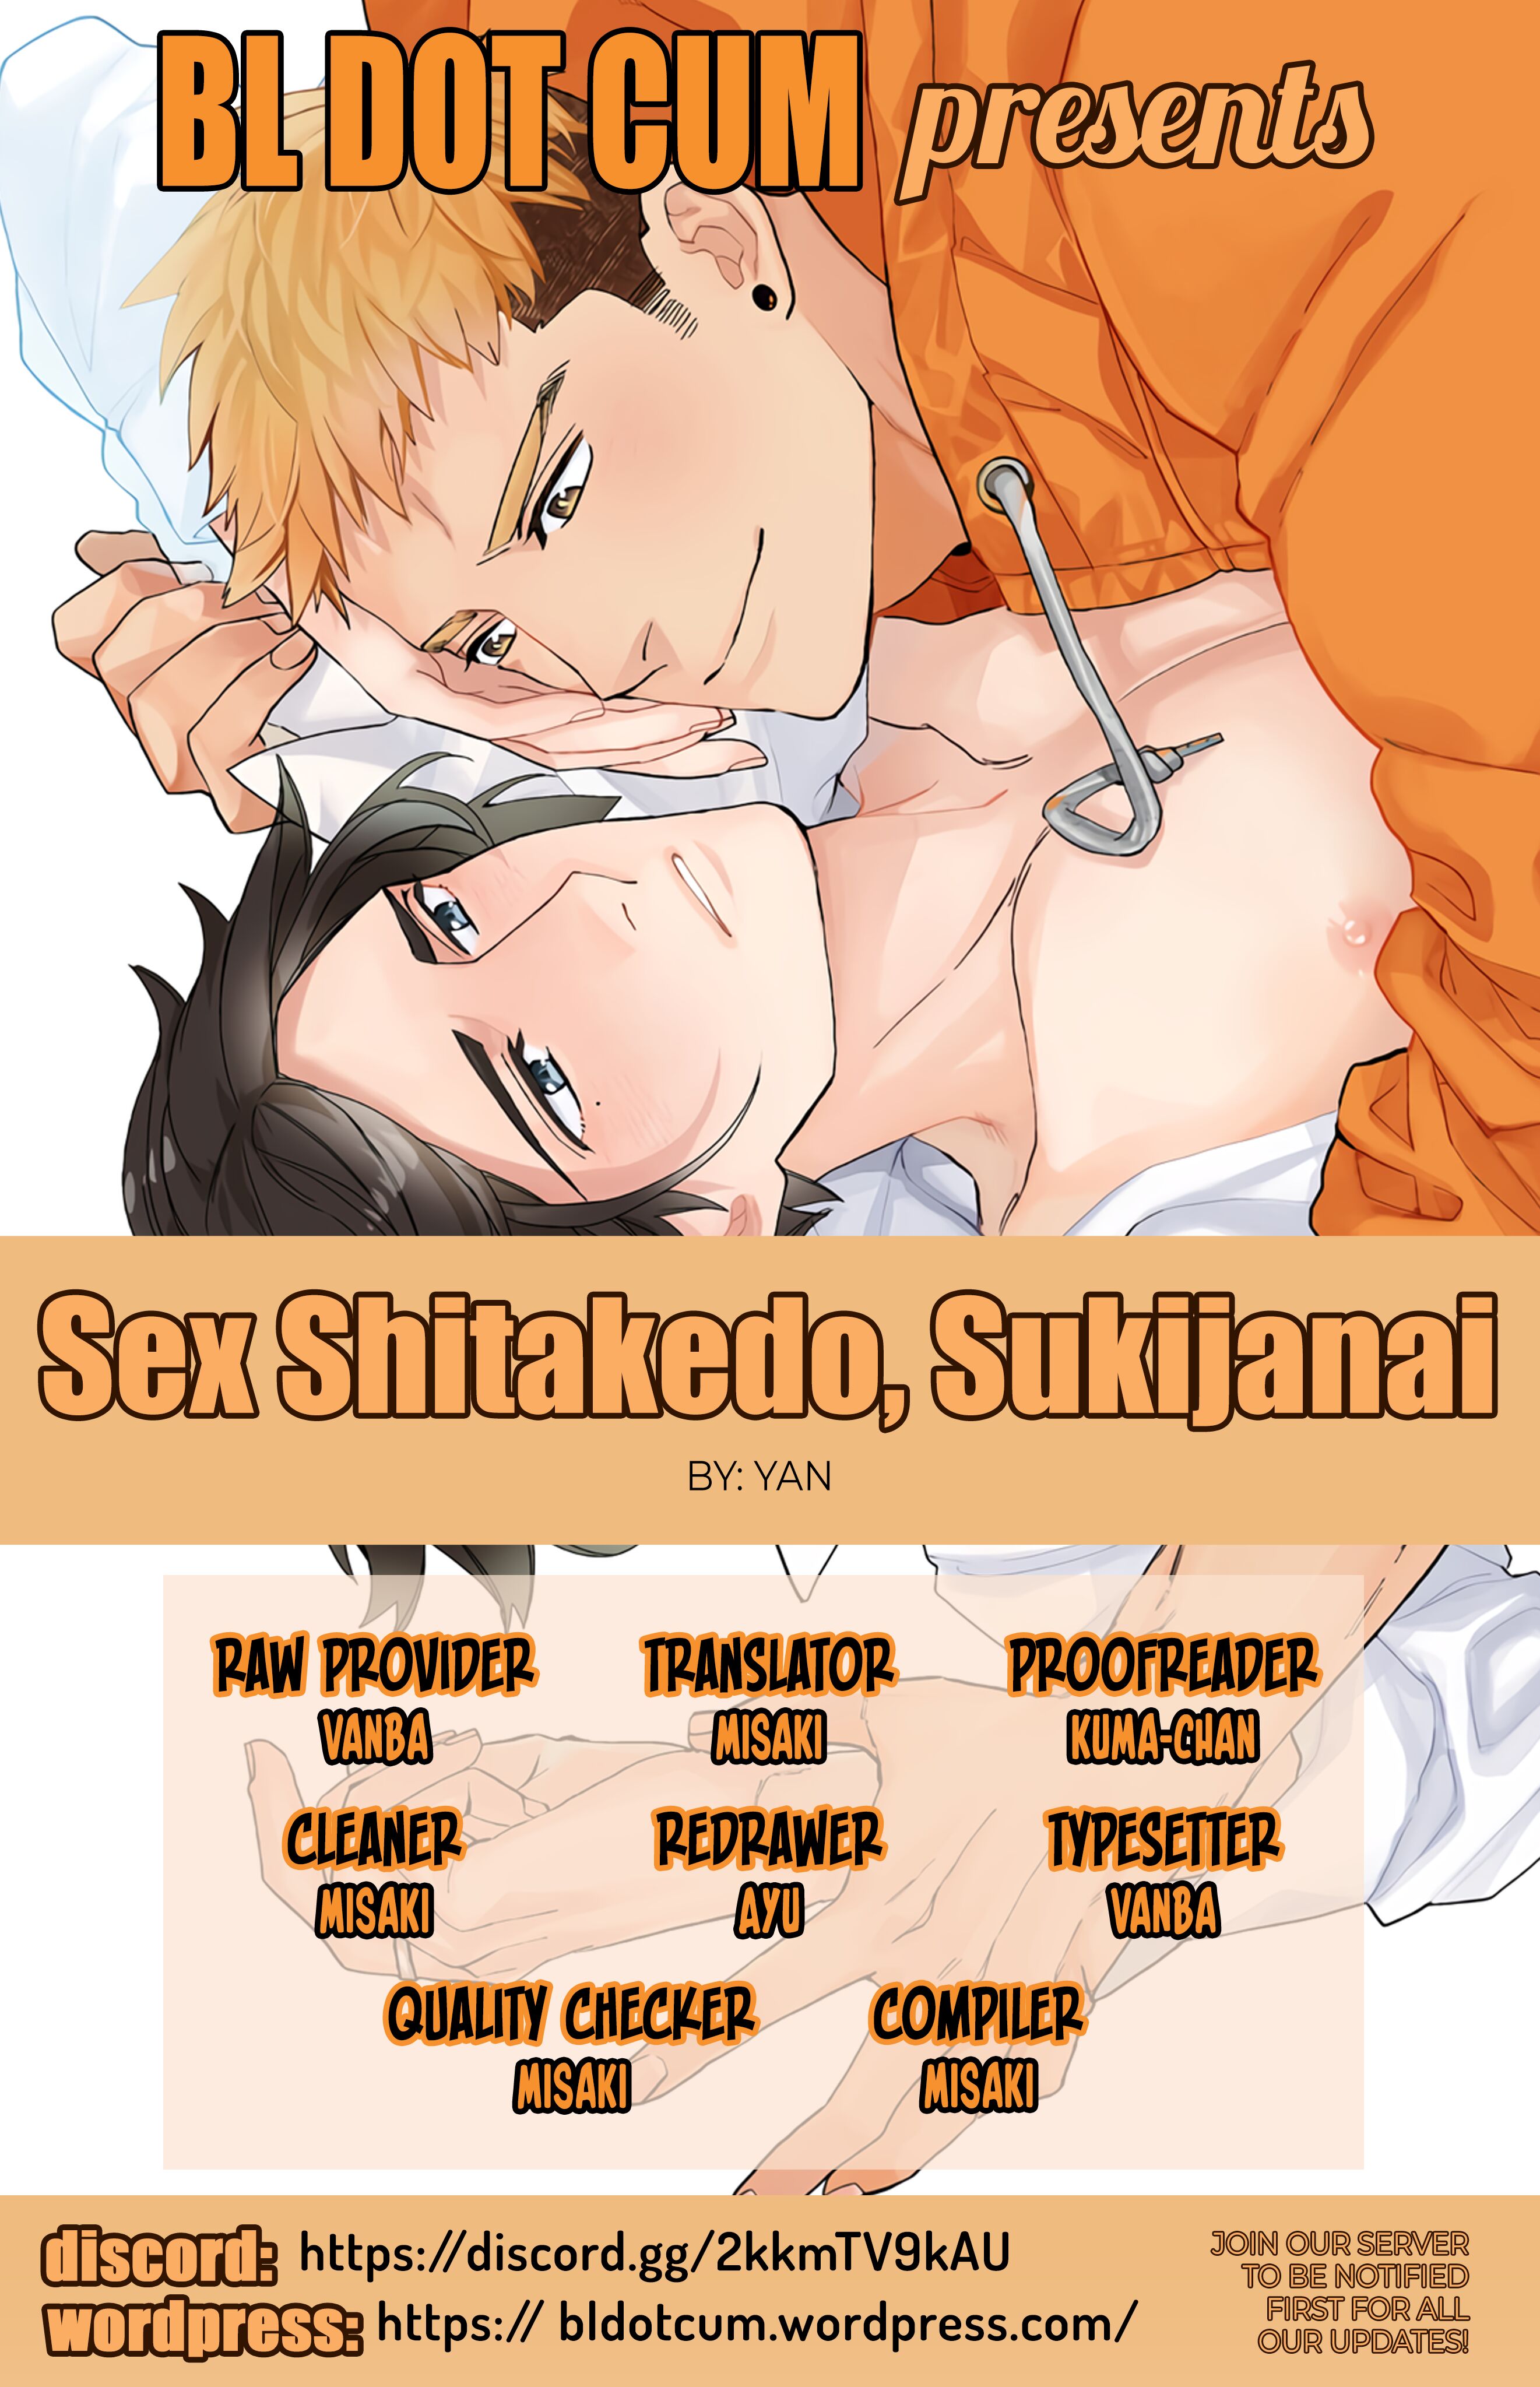 Sex Shitakedo, Sukijanai Chapter 1 - MyToon.net